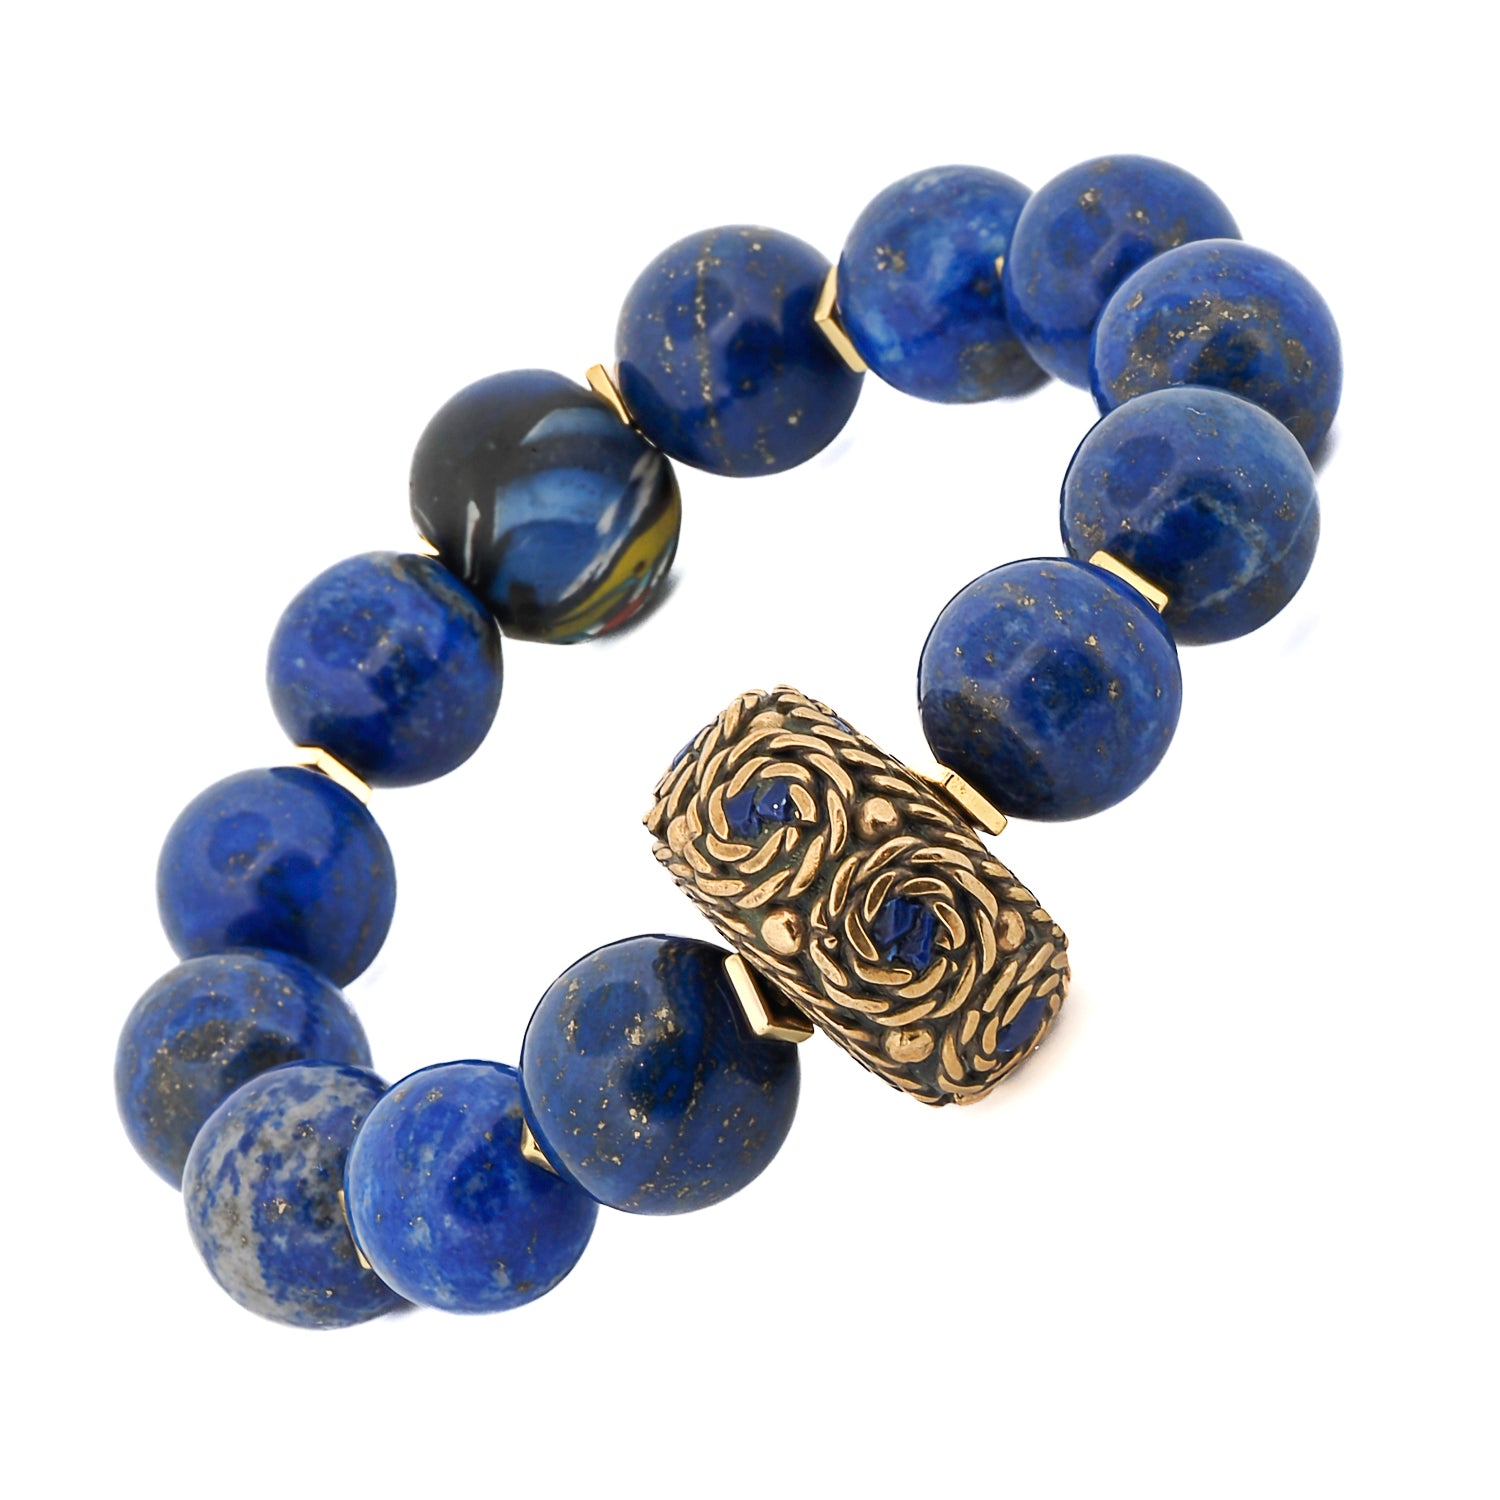 Blue Lapis Lazuli Gemstone Chunky Beaded Bracelet